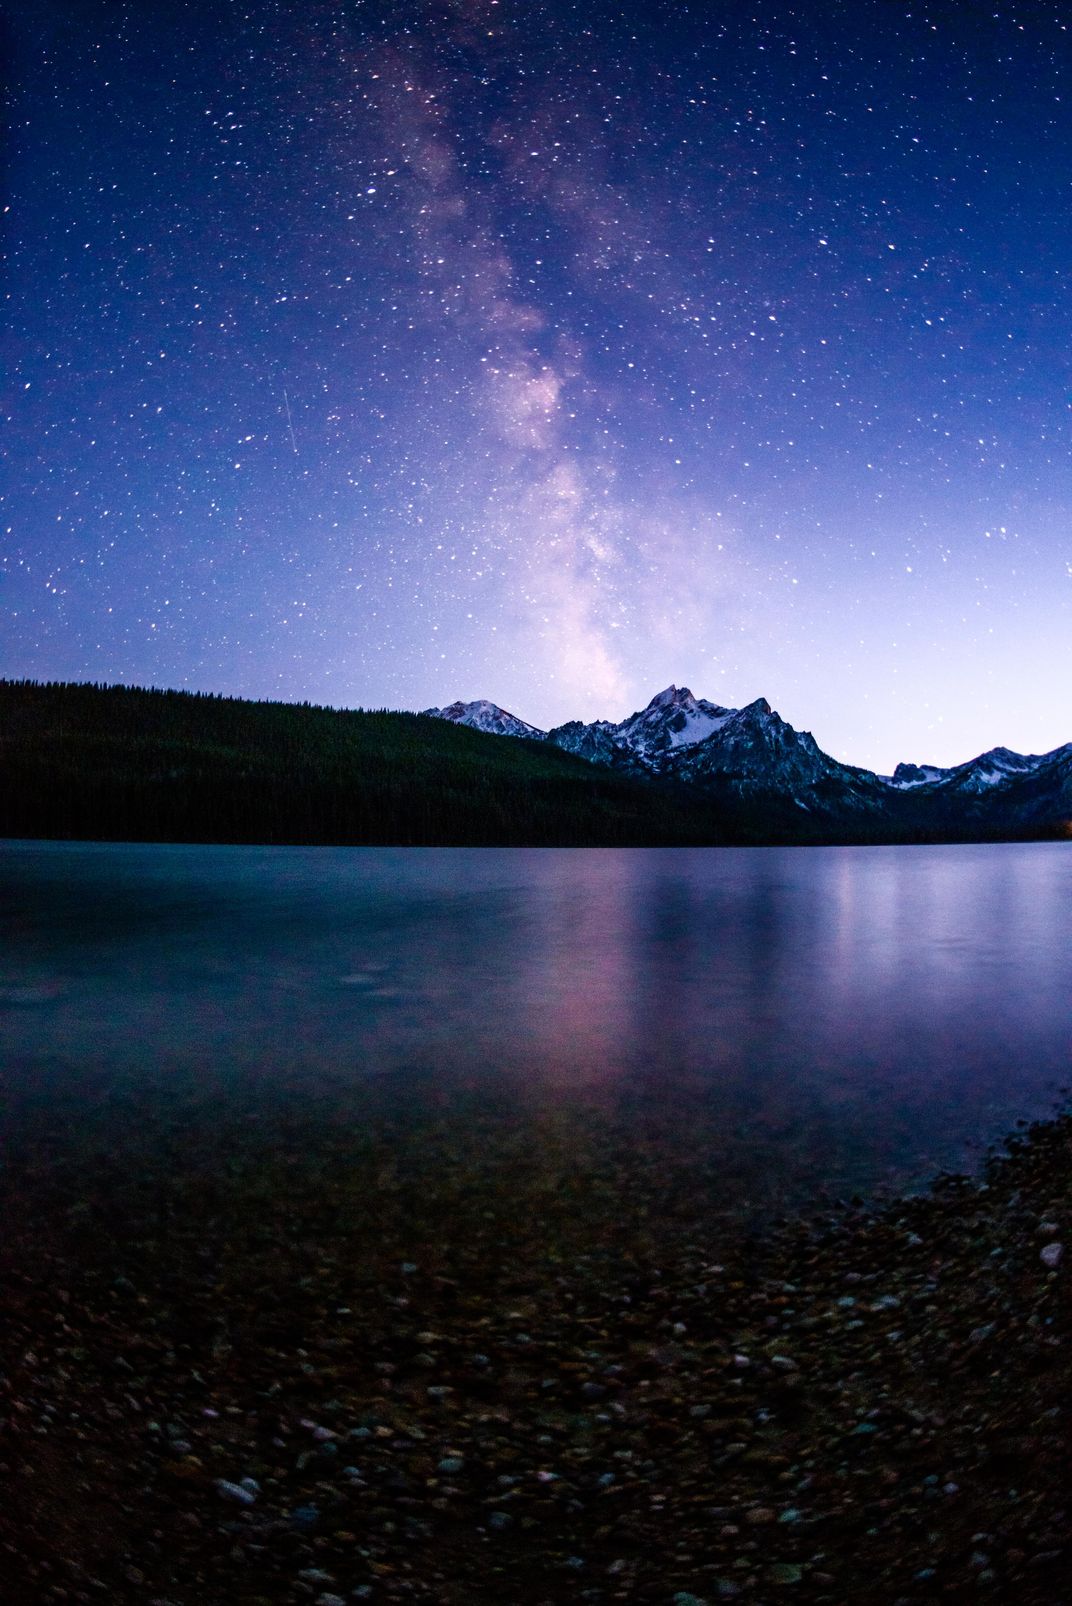 Stanley Lake at night